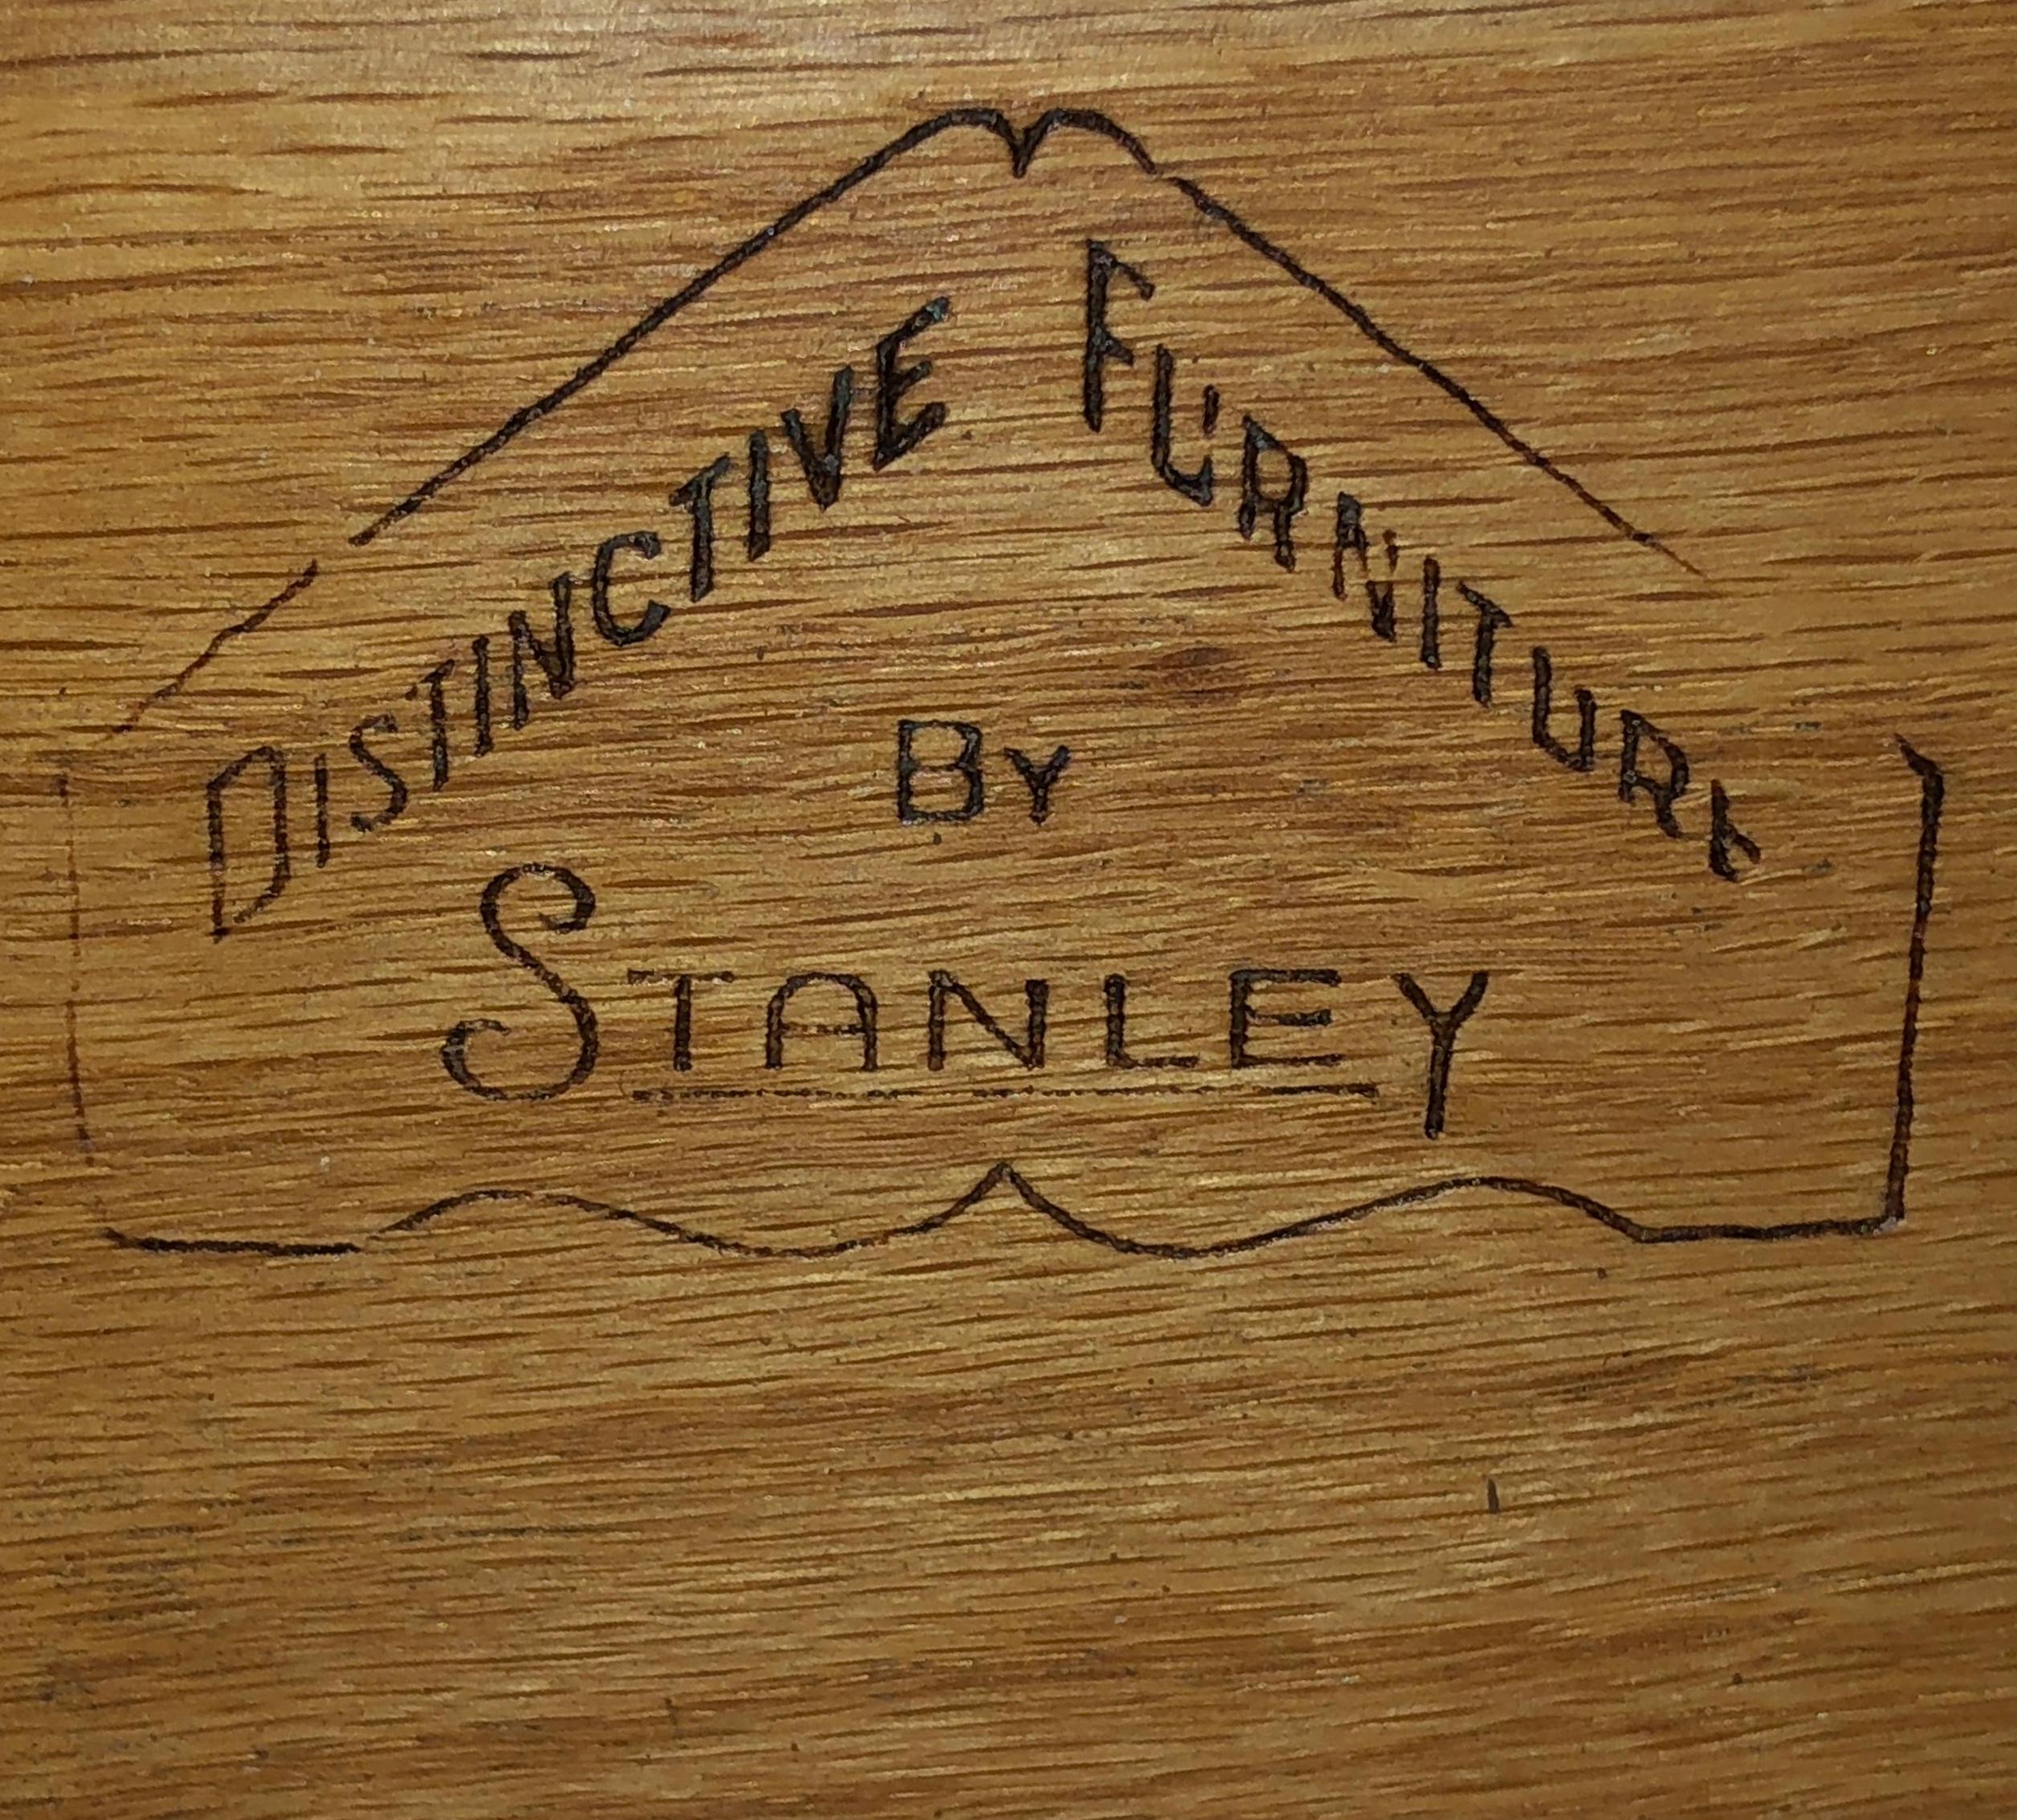 Mid-Century Modern Stanley Furniture Company Walnut Dresser Sideboard Credenza